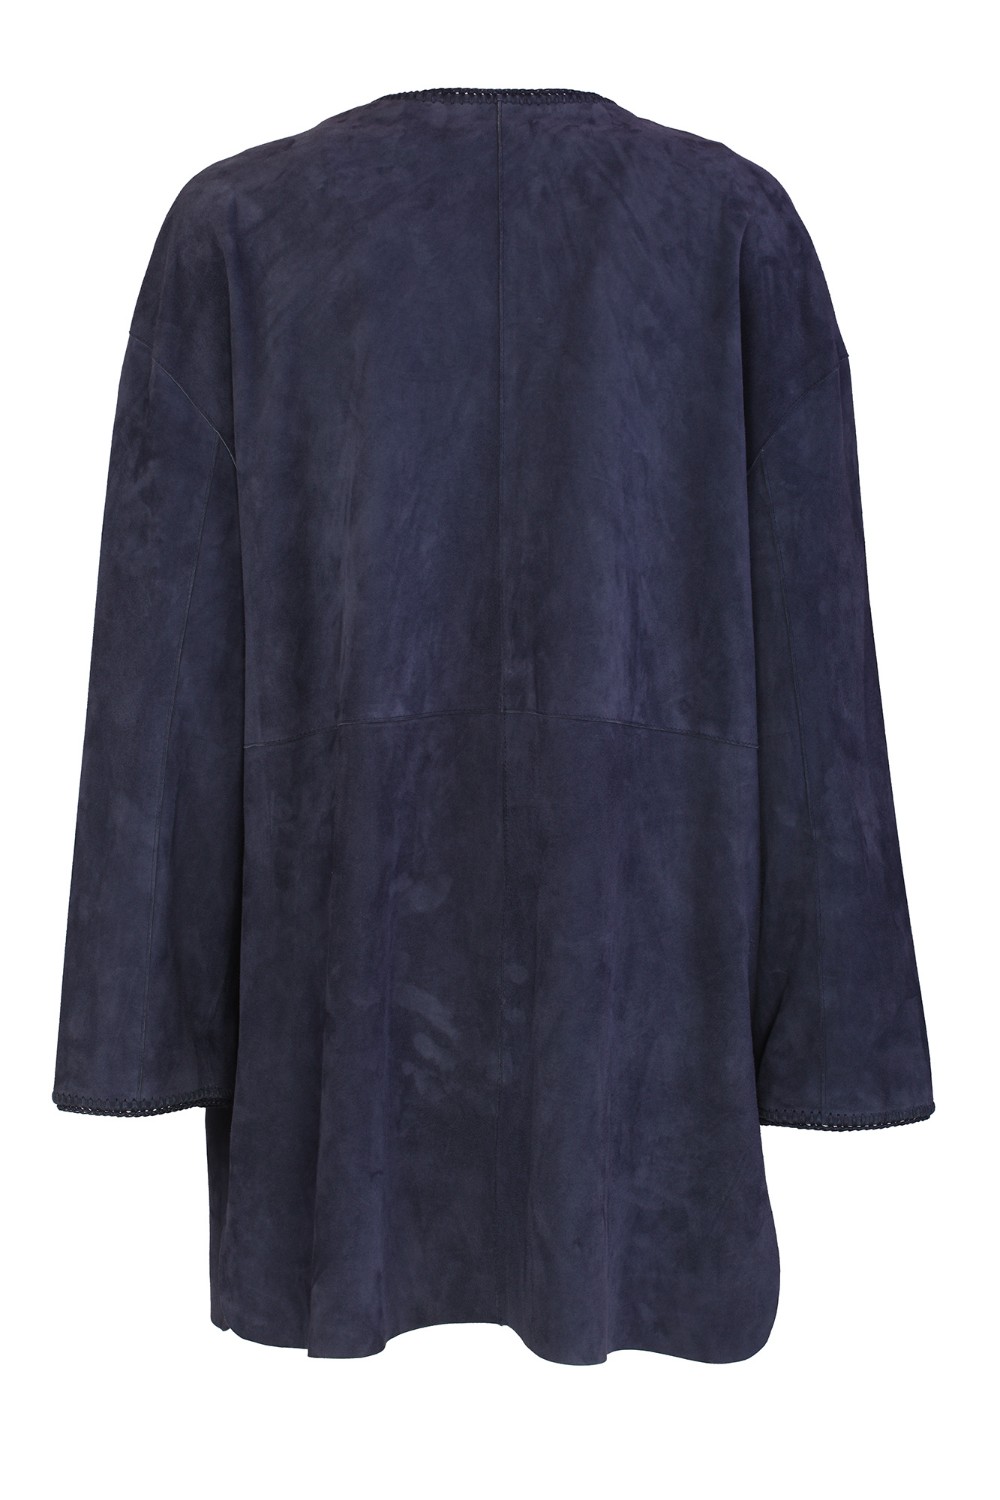 shop PLUMES Saldi Spolverino: Plumes kimono in pelle scamosciata.
Kimono con cintura.
Tasche laterali.
Manica lunga.
Composizione: 100% camoscio.
Made in India.. KIMO+BELT-DENIM number 8742180